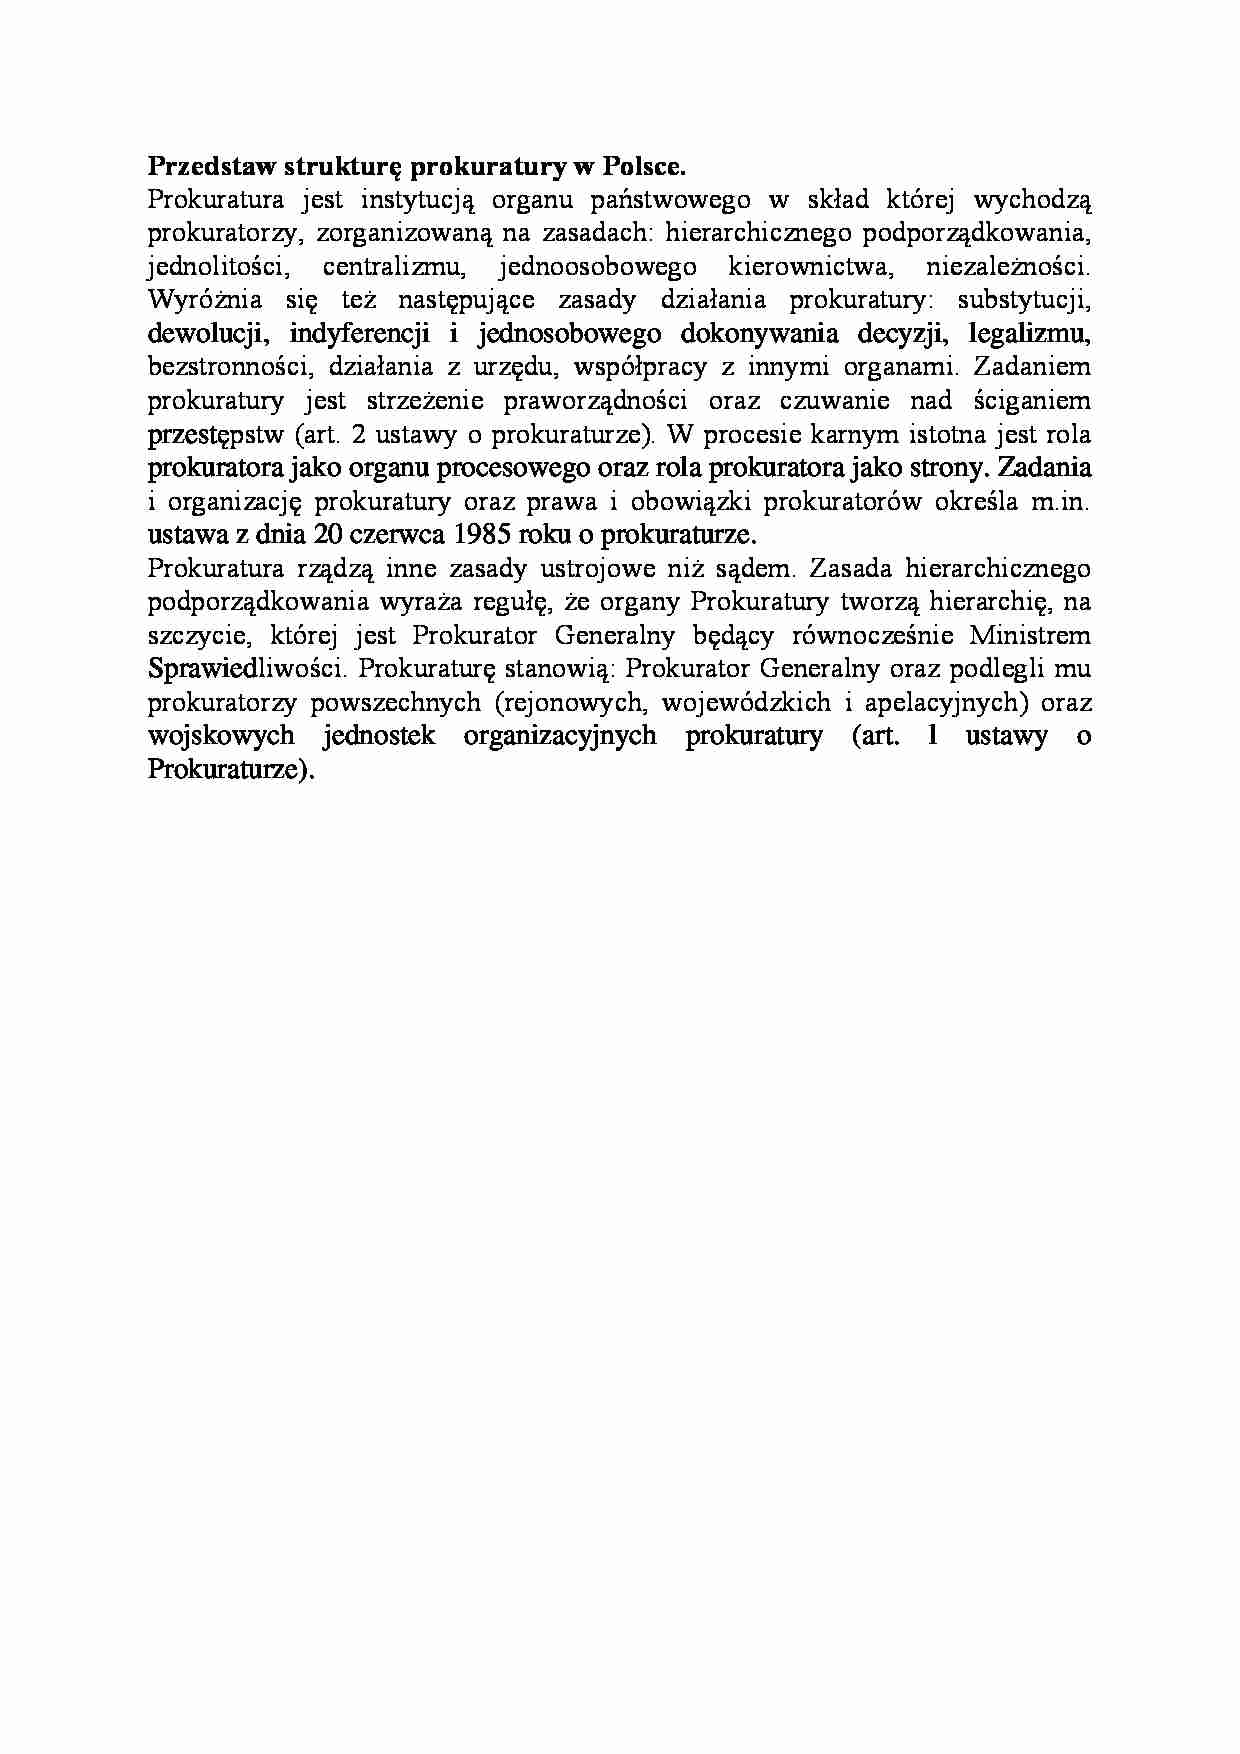 Struktura prokuratury w Polsce-opracowanie - strona 1